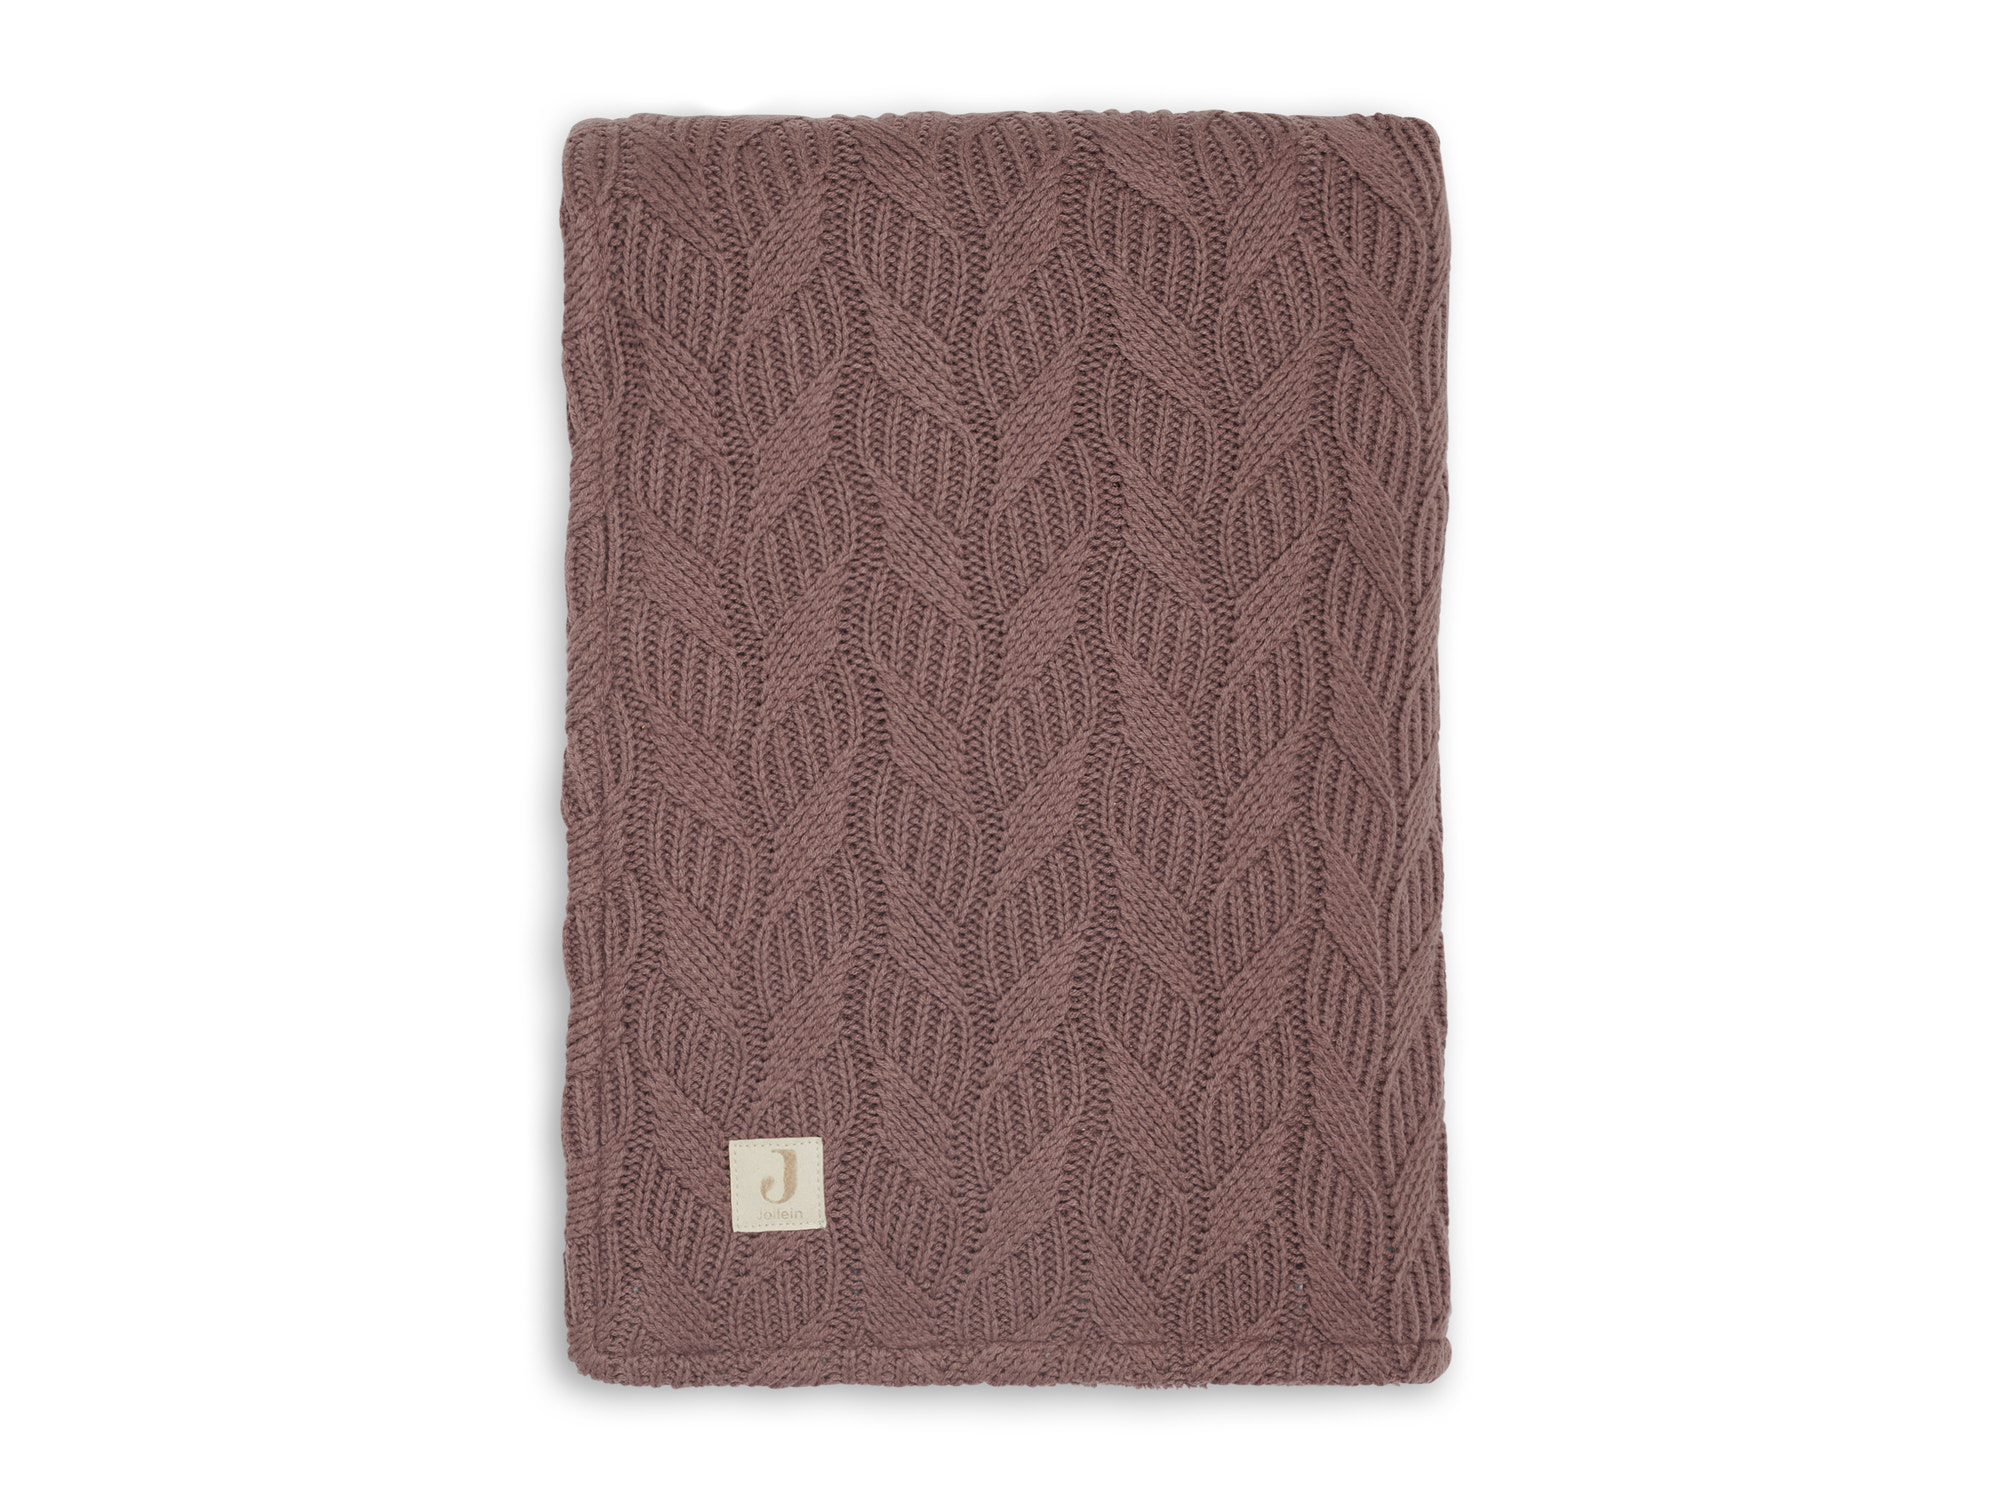 Jollein Blanket Spring Knit Coral Fleece - 75x100 cm.